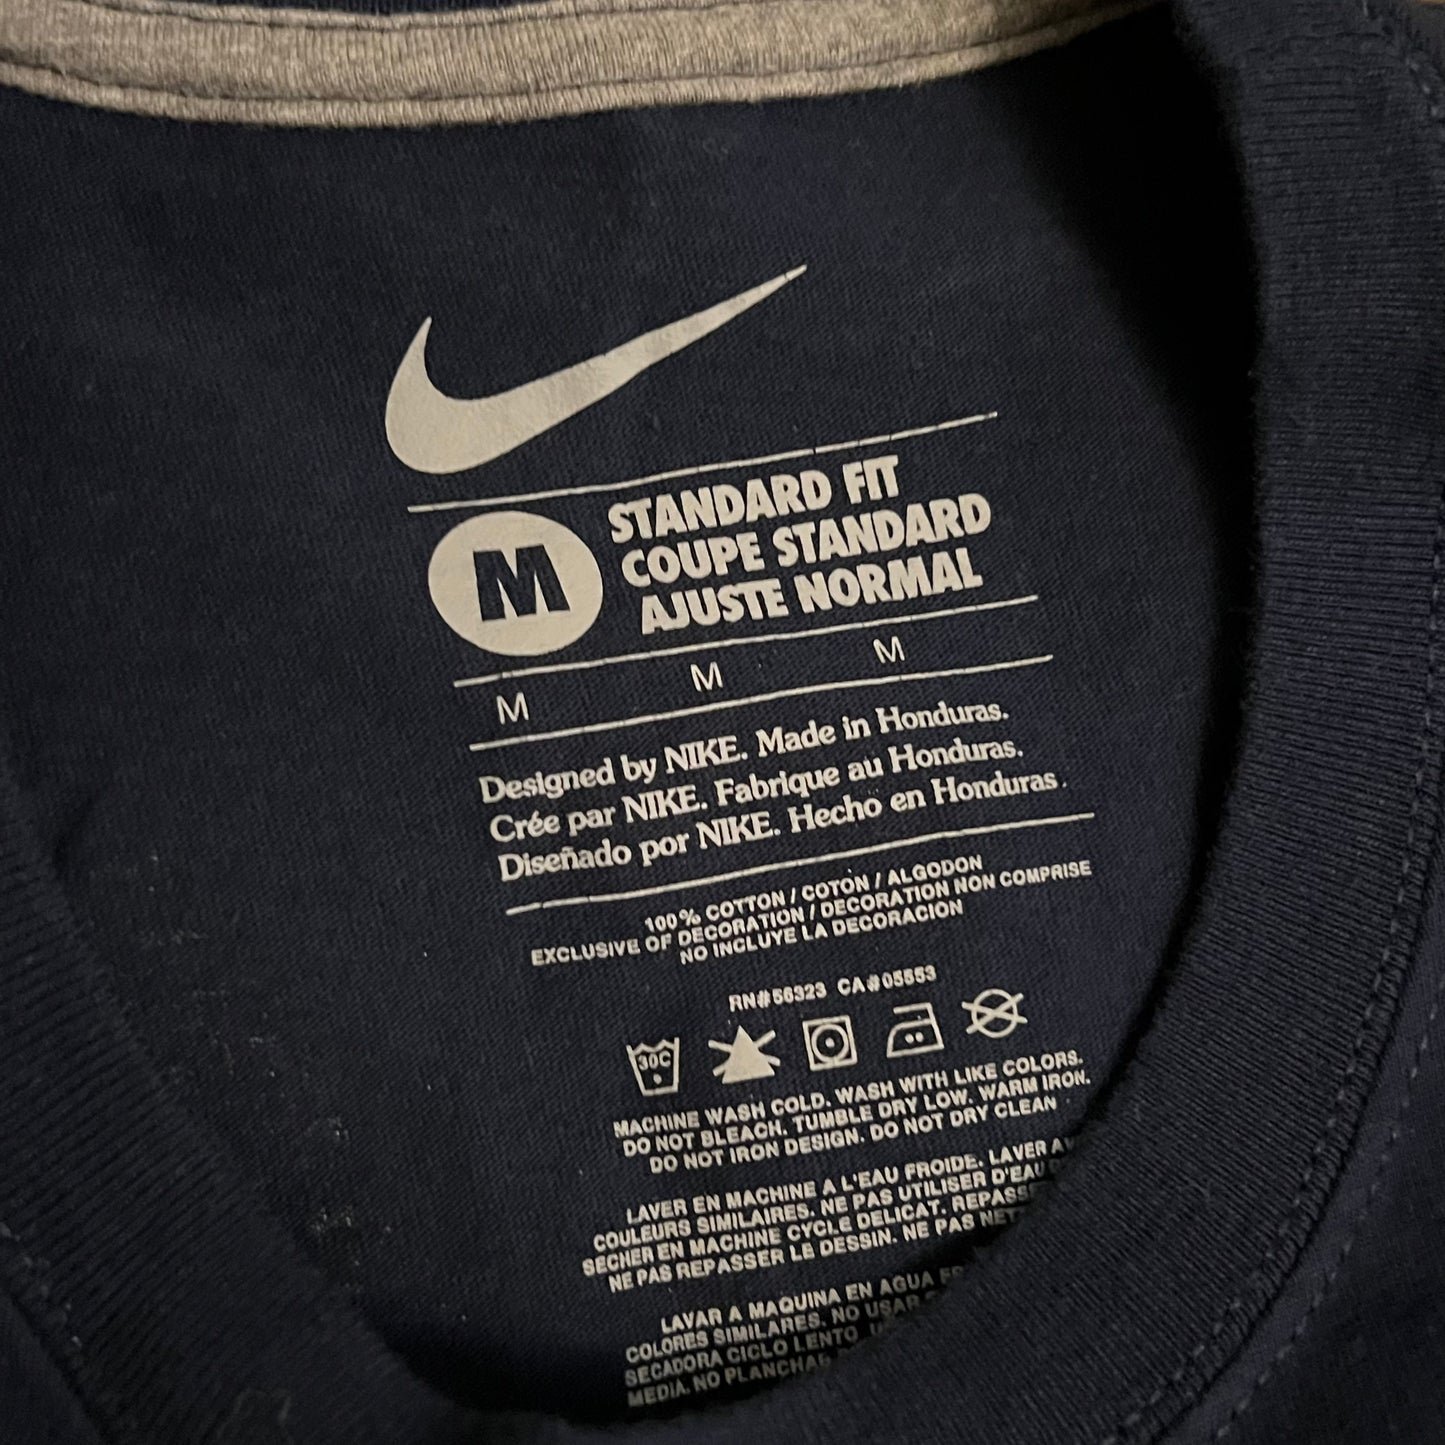 USMNT 2011 Nike Soccer Jersey Shirt - M